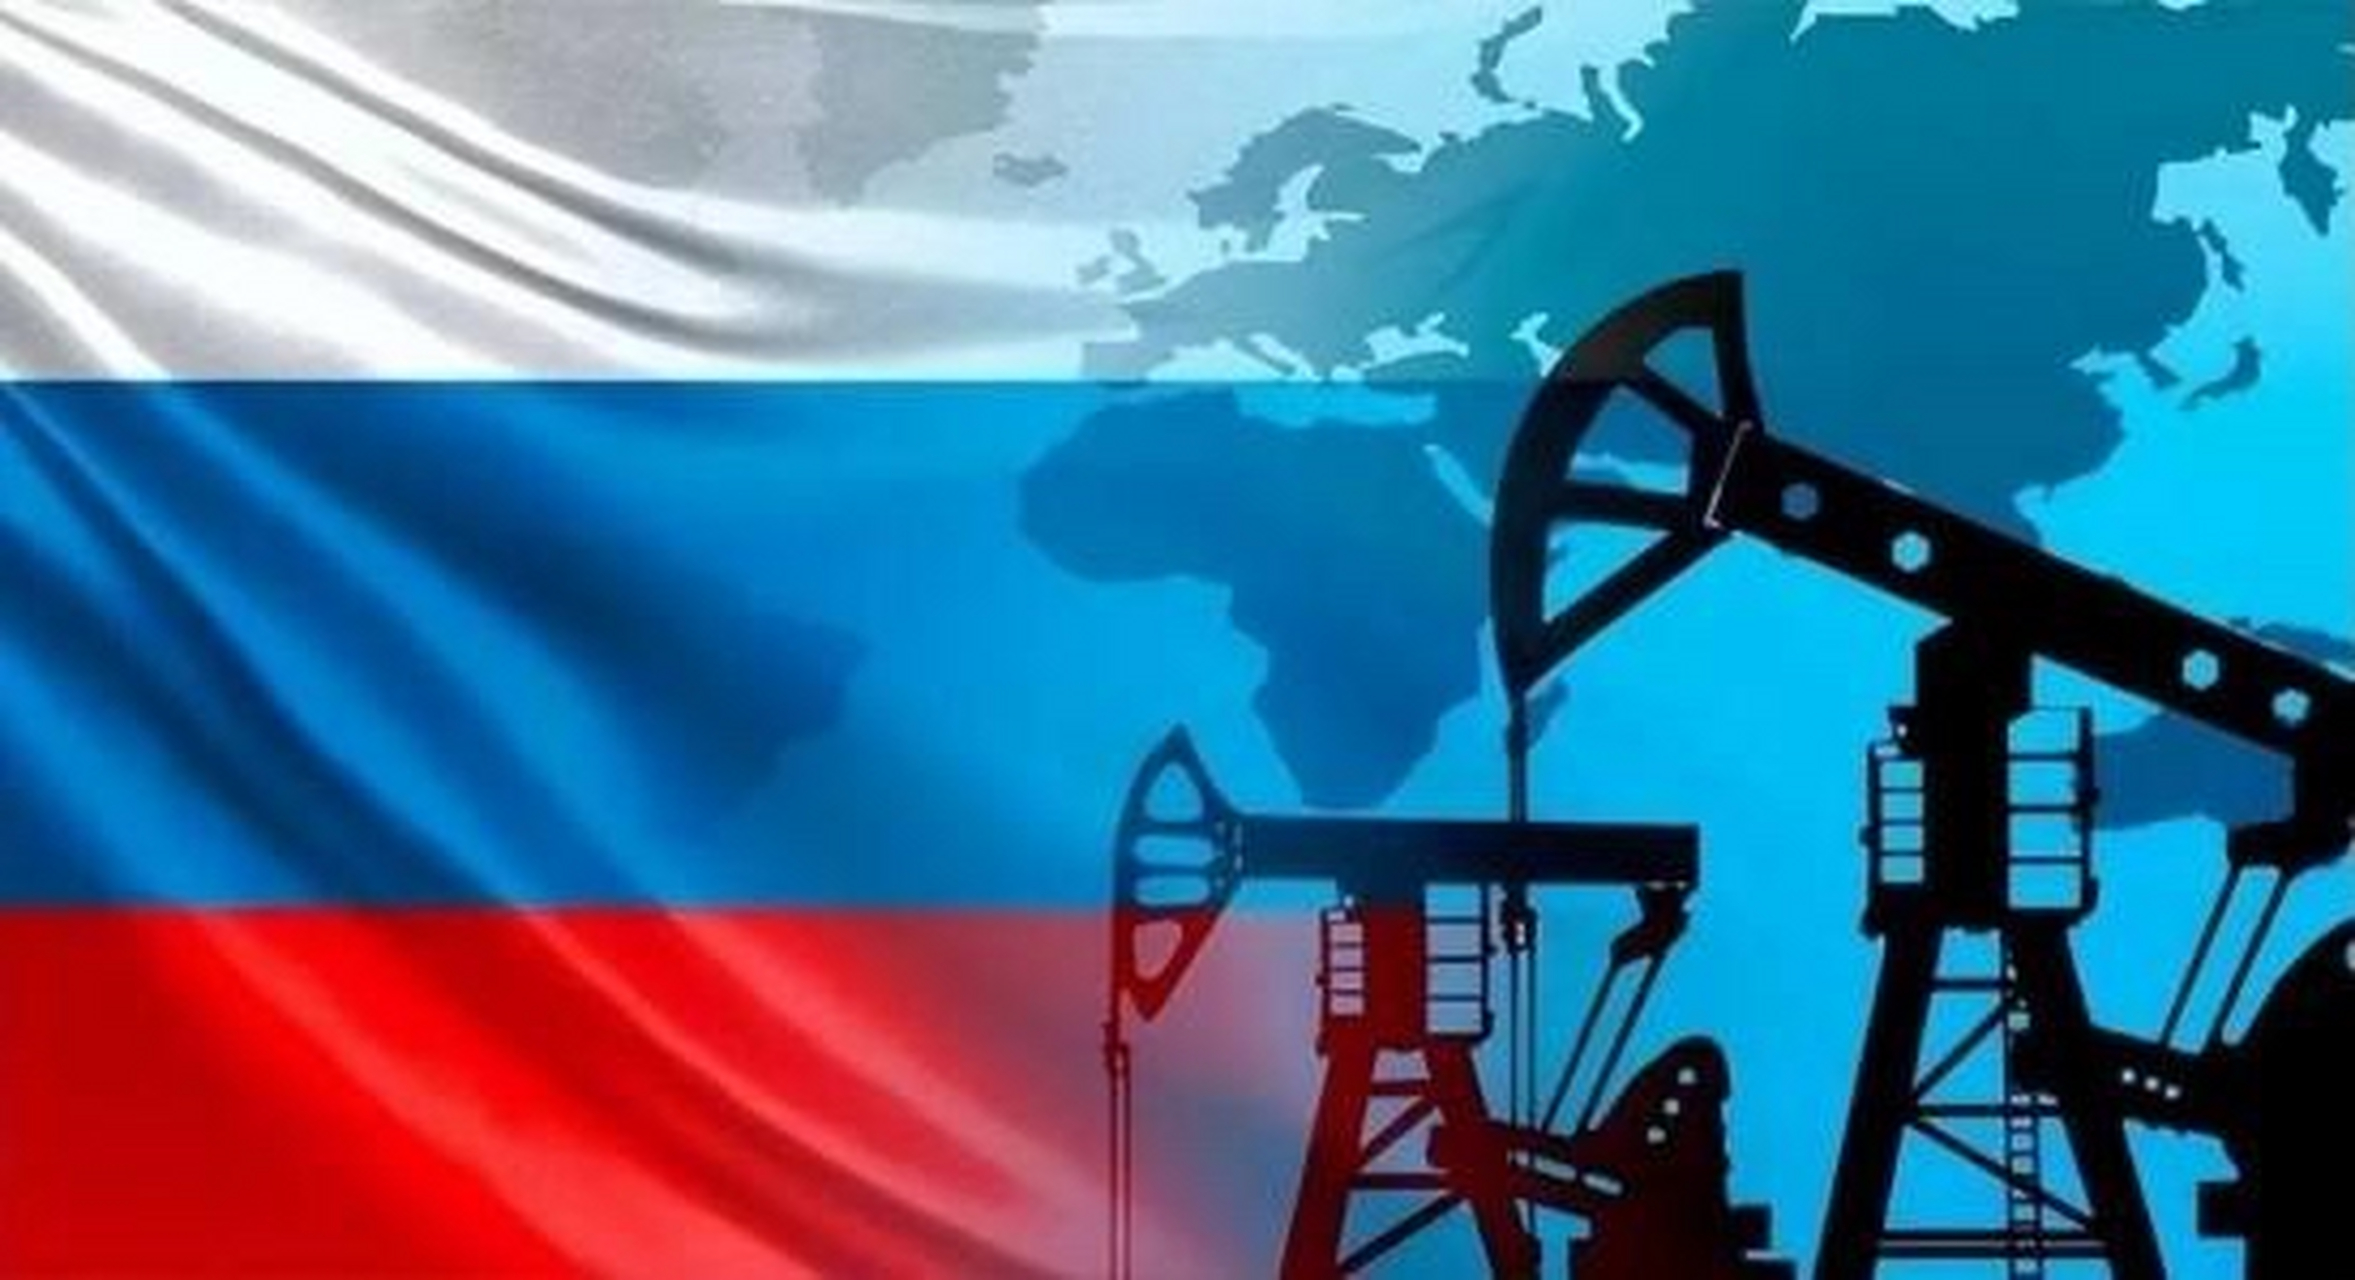 塔斯社发布消息称,俄罗斯政府已下令暂停发布石油,天然气和凝析油产量